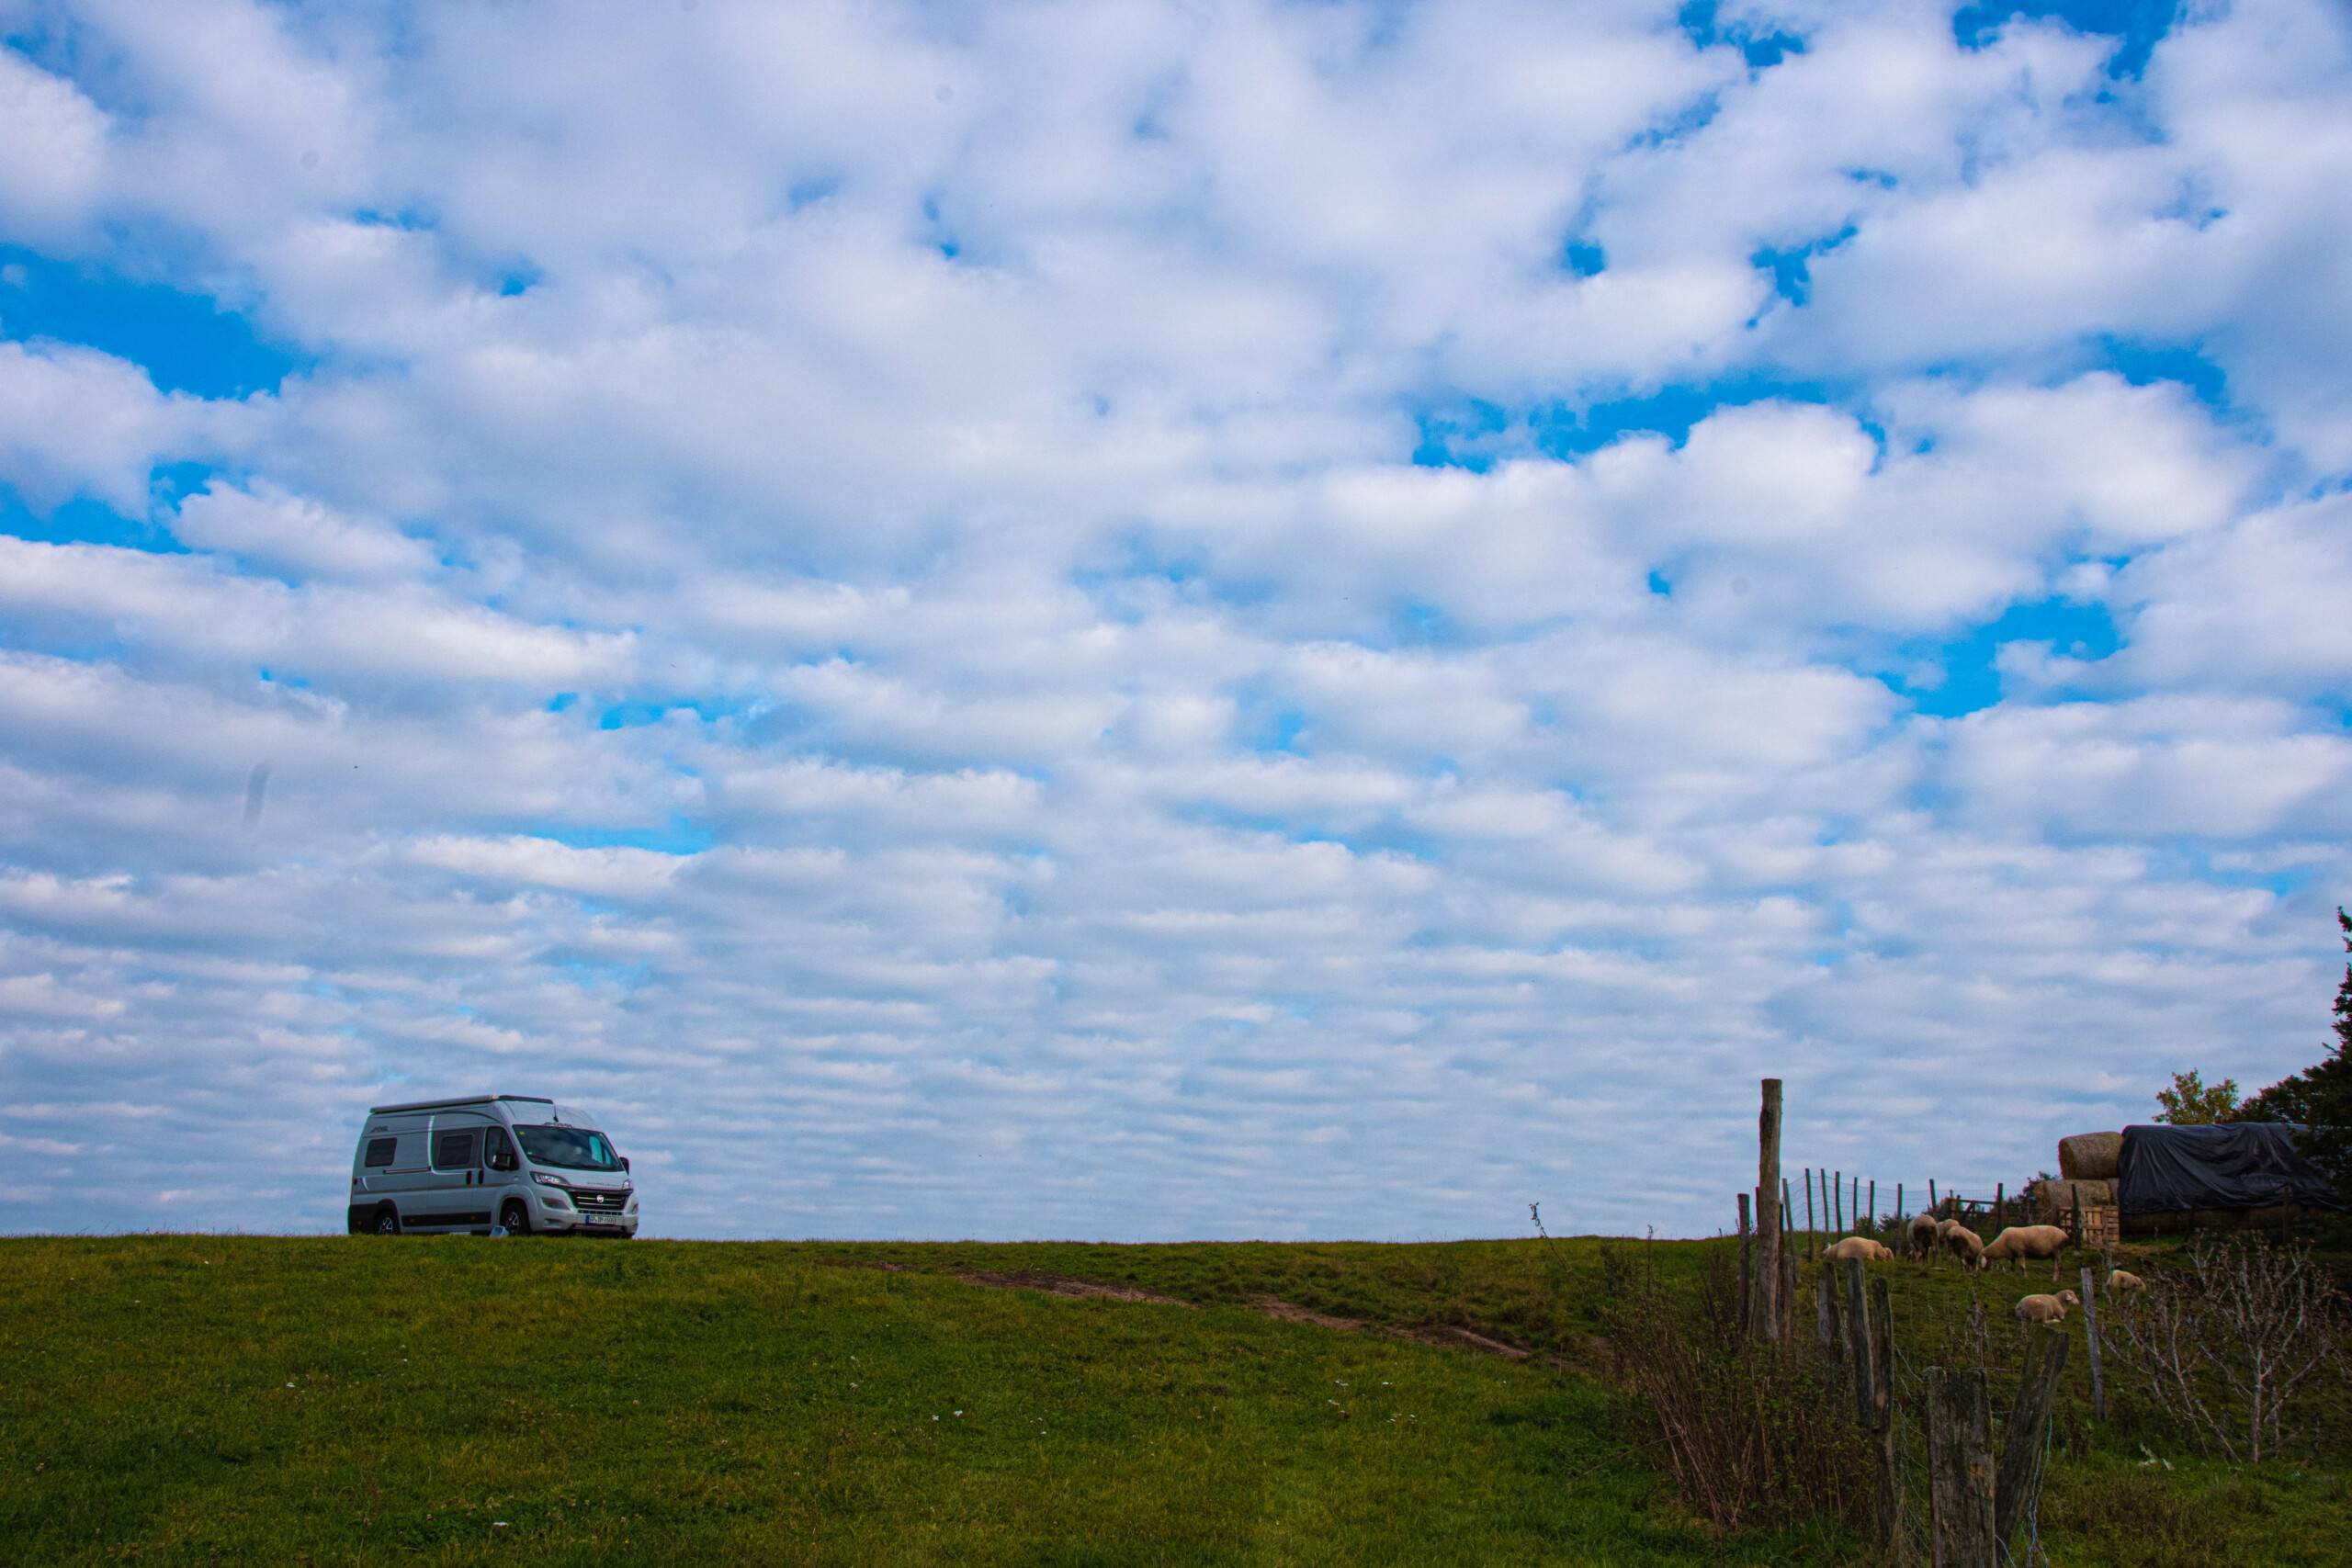 Auf einem grasbewachsenen Hügel ist in der Ferne ein Campervan zu sehen. Der Himmel ist blau mit weißen Wolken durchwirkt, die wie Wattebällchen ausschauen